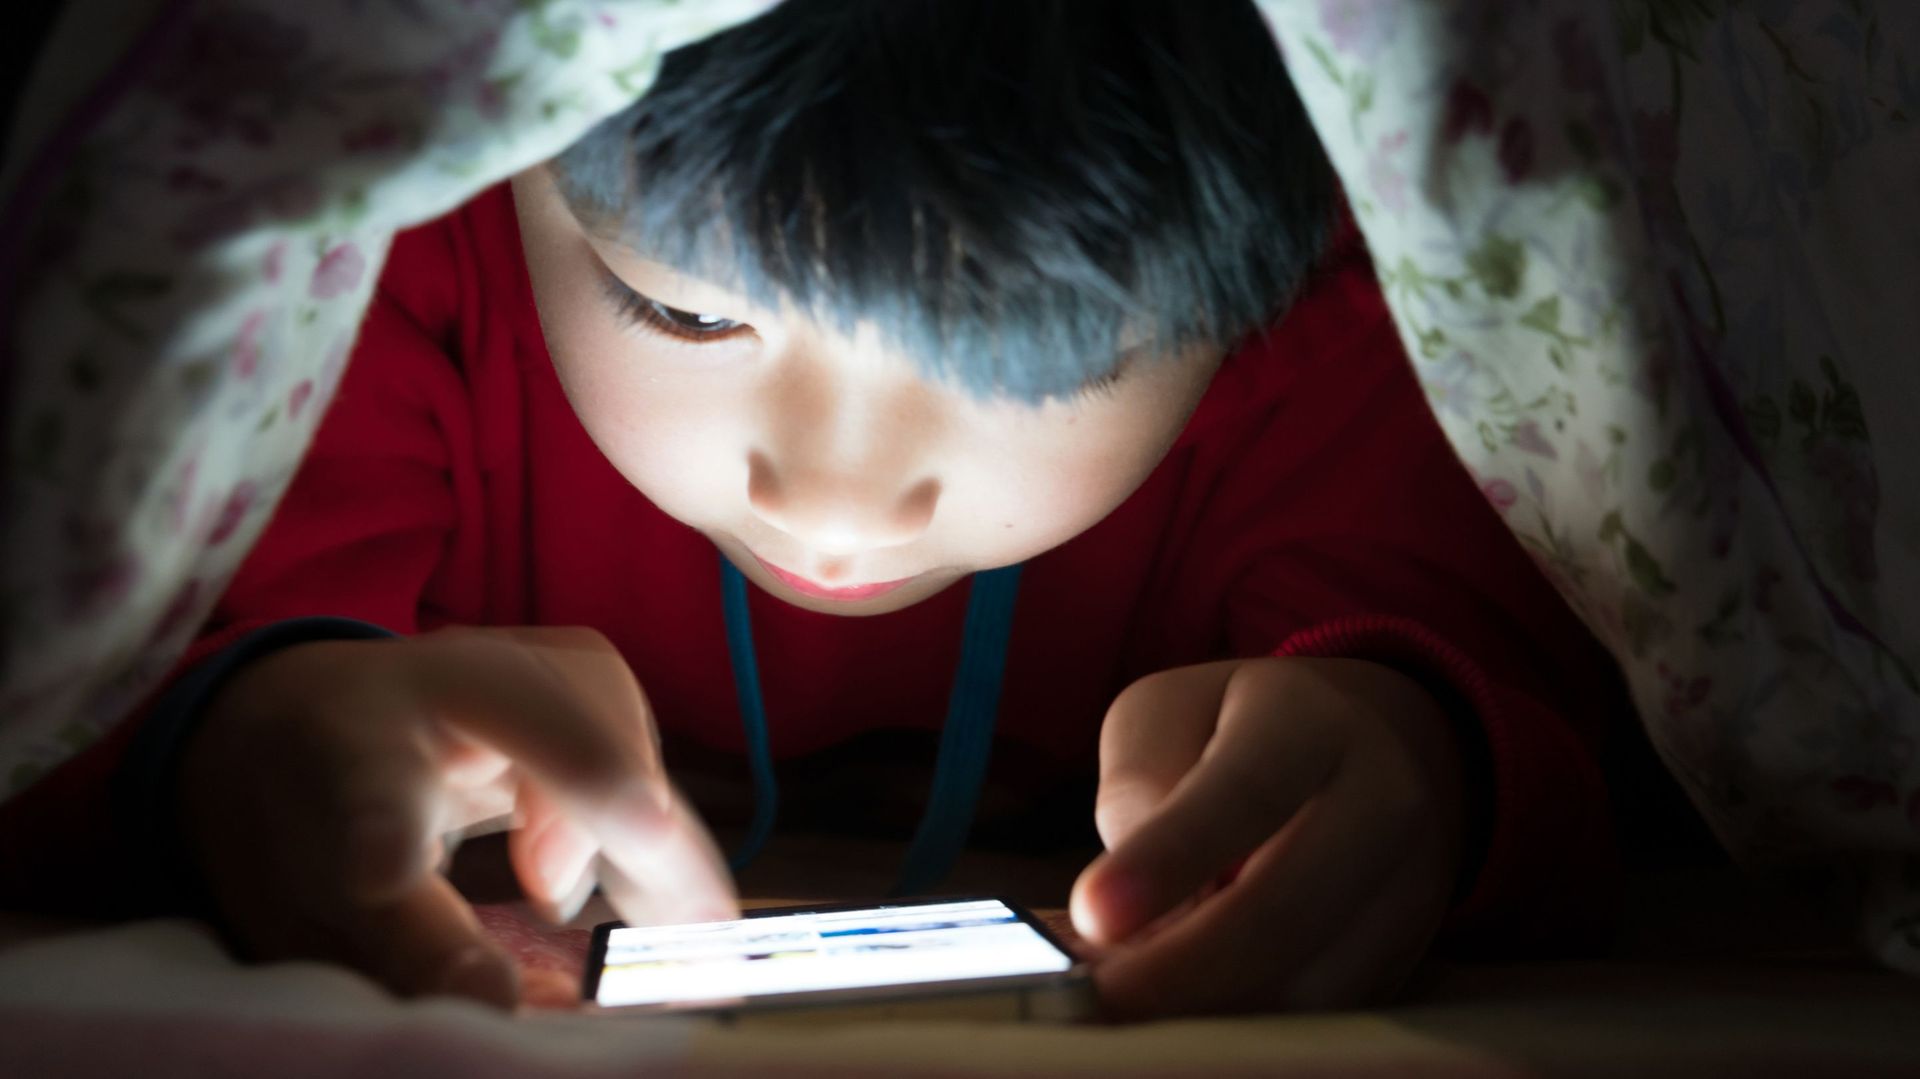 La réglementation en vigueur en Chine empêche officiellement les moins de 18 ans de jouer à des jeux vidéo en ligne entre 22h et 8h. Une mesure qui vise à réduire l’addiction et les problèmes de vision chez les plus jeunes.